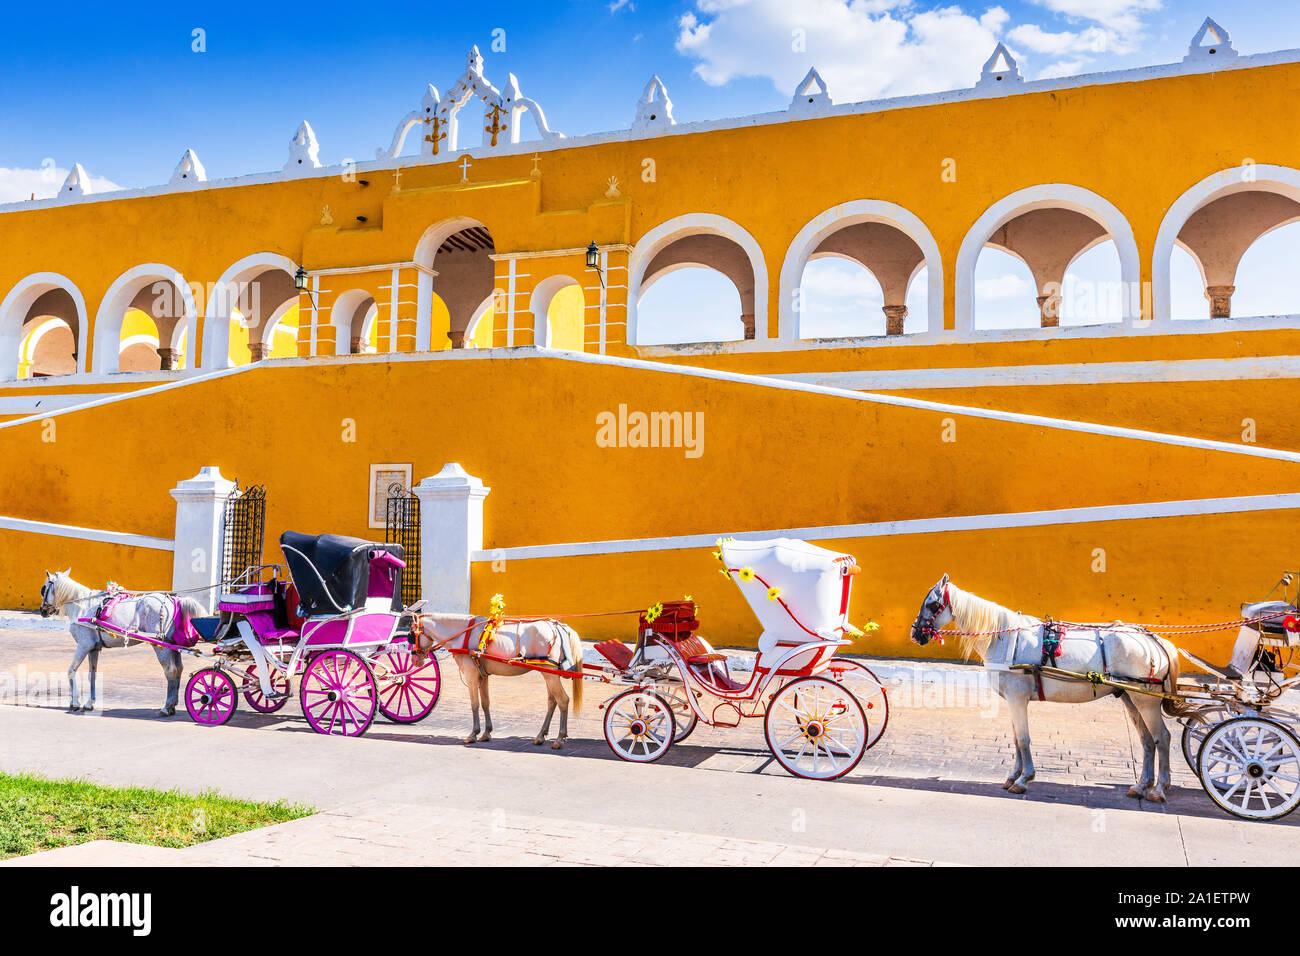 Izamal, México. Convento de San Antonio de Padua y carruajes de caballos. Foto de stock